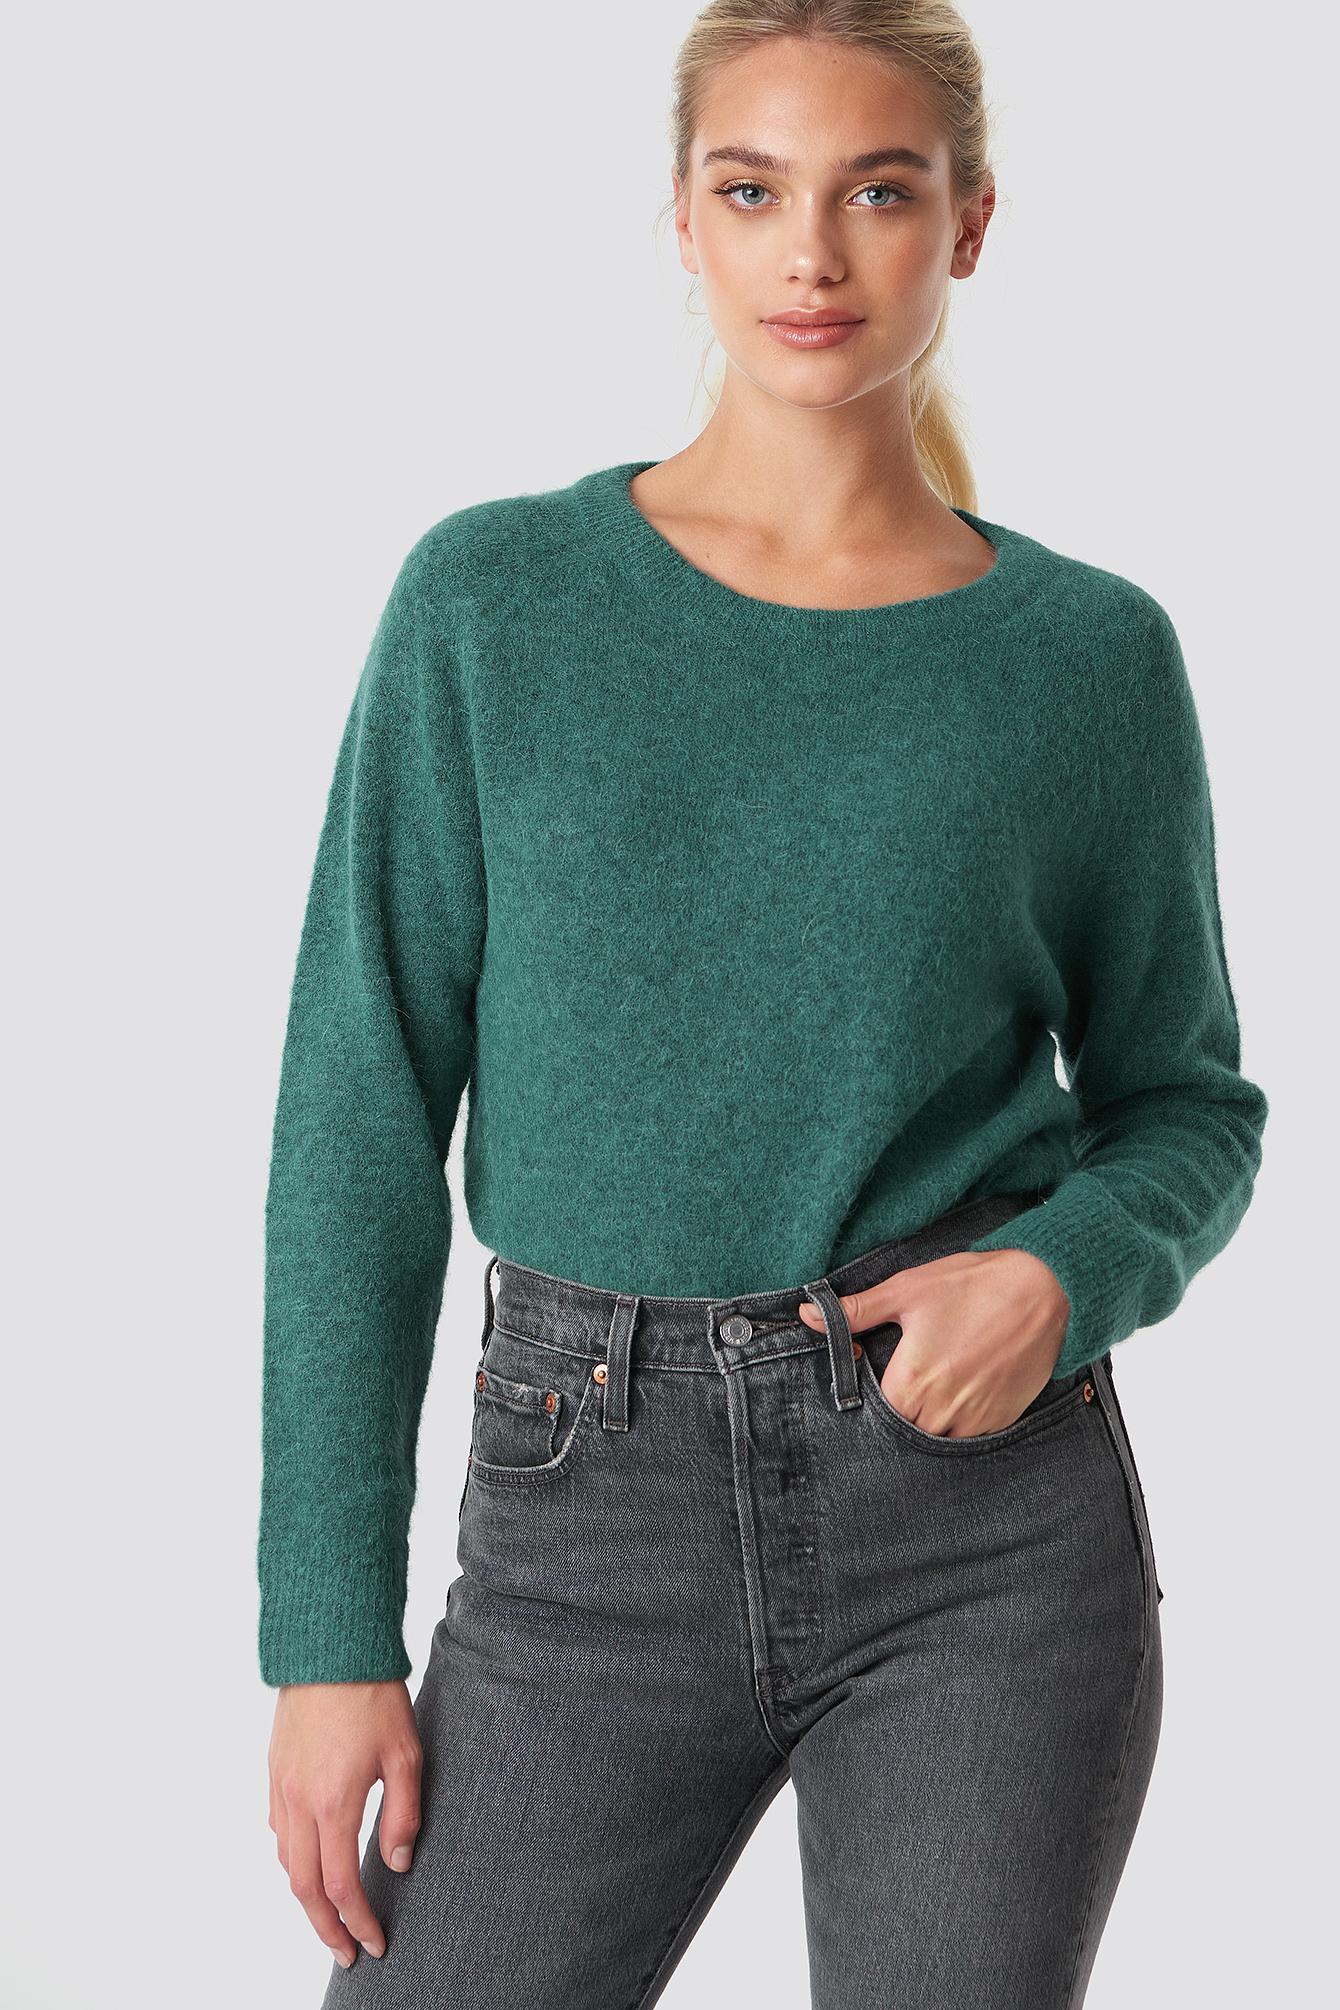 Samsoe & Samsoe Nor O-n Short Sweater - Green | ModeSens